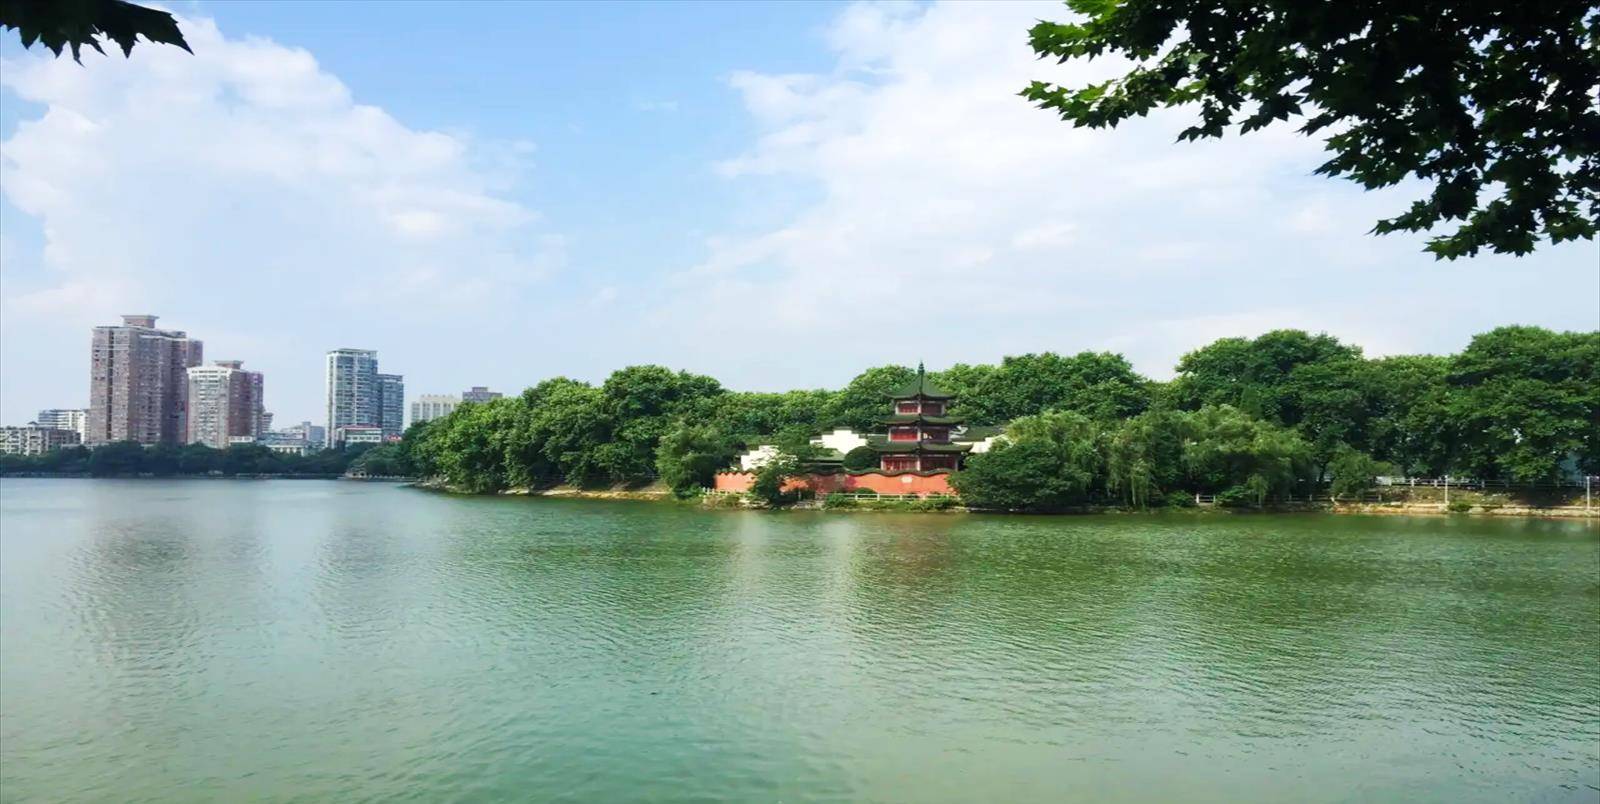 将湖面一分为二,东为南湖,西为甘棠湖,1951年建成甘棠公园,是九江市第